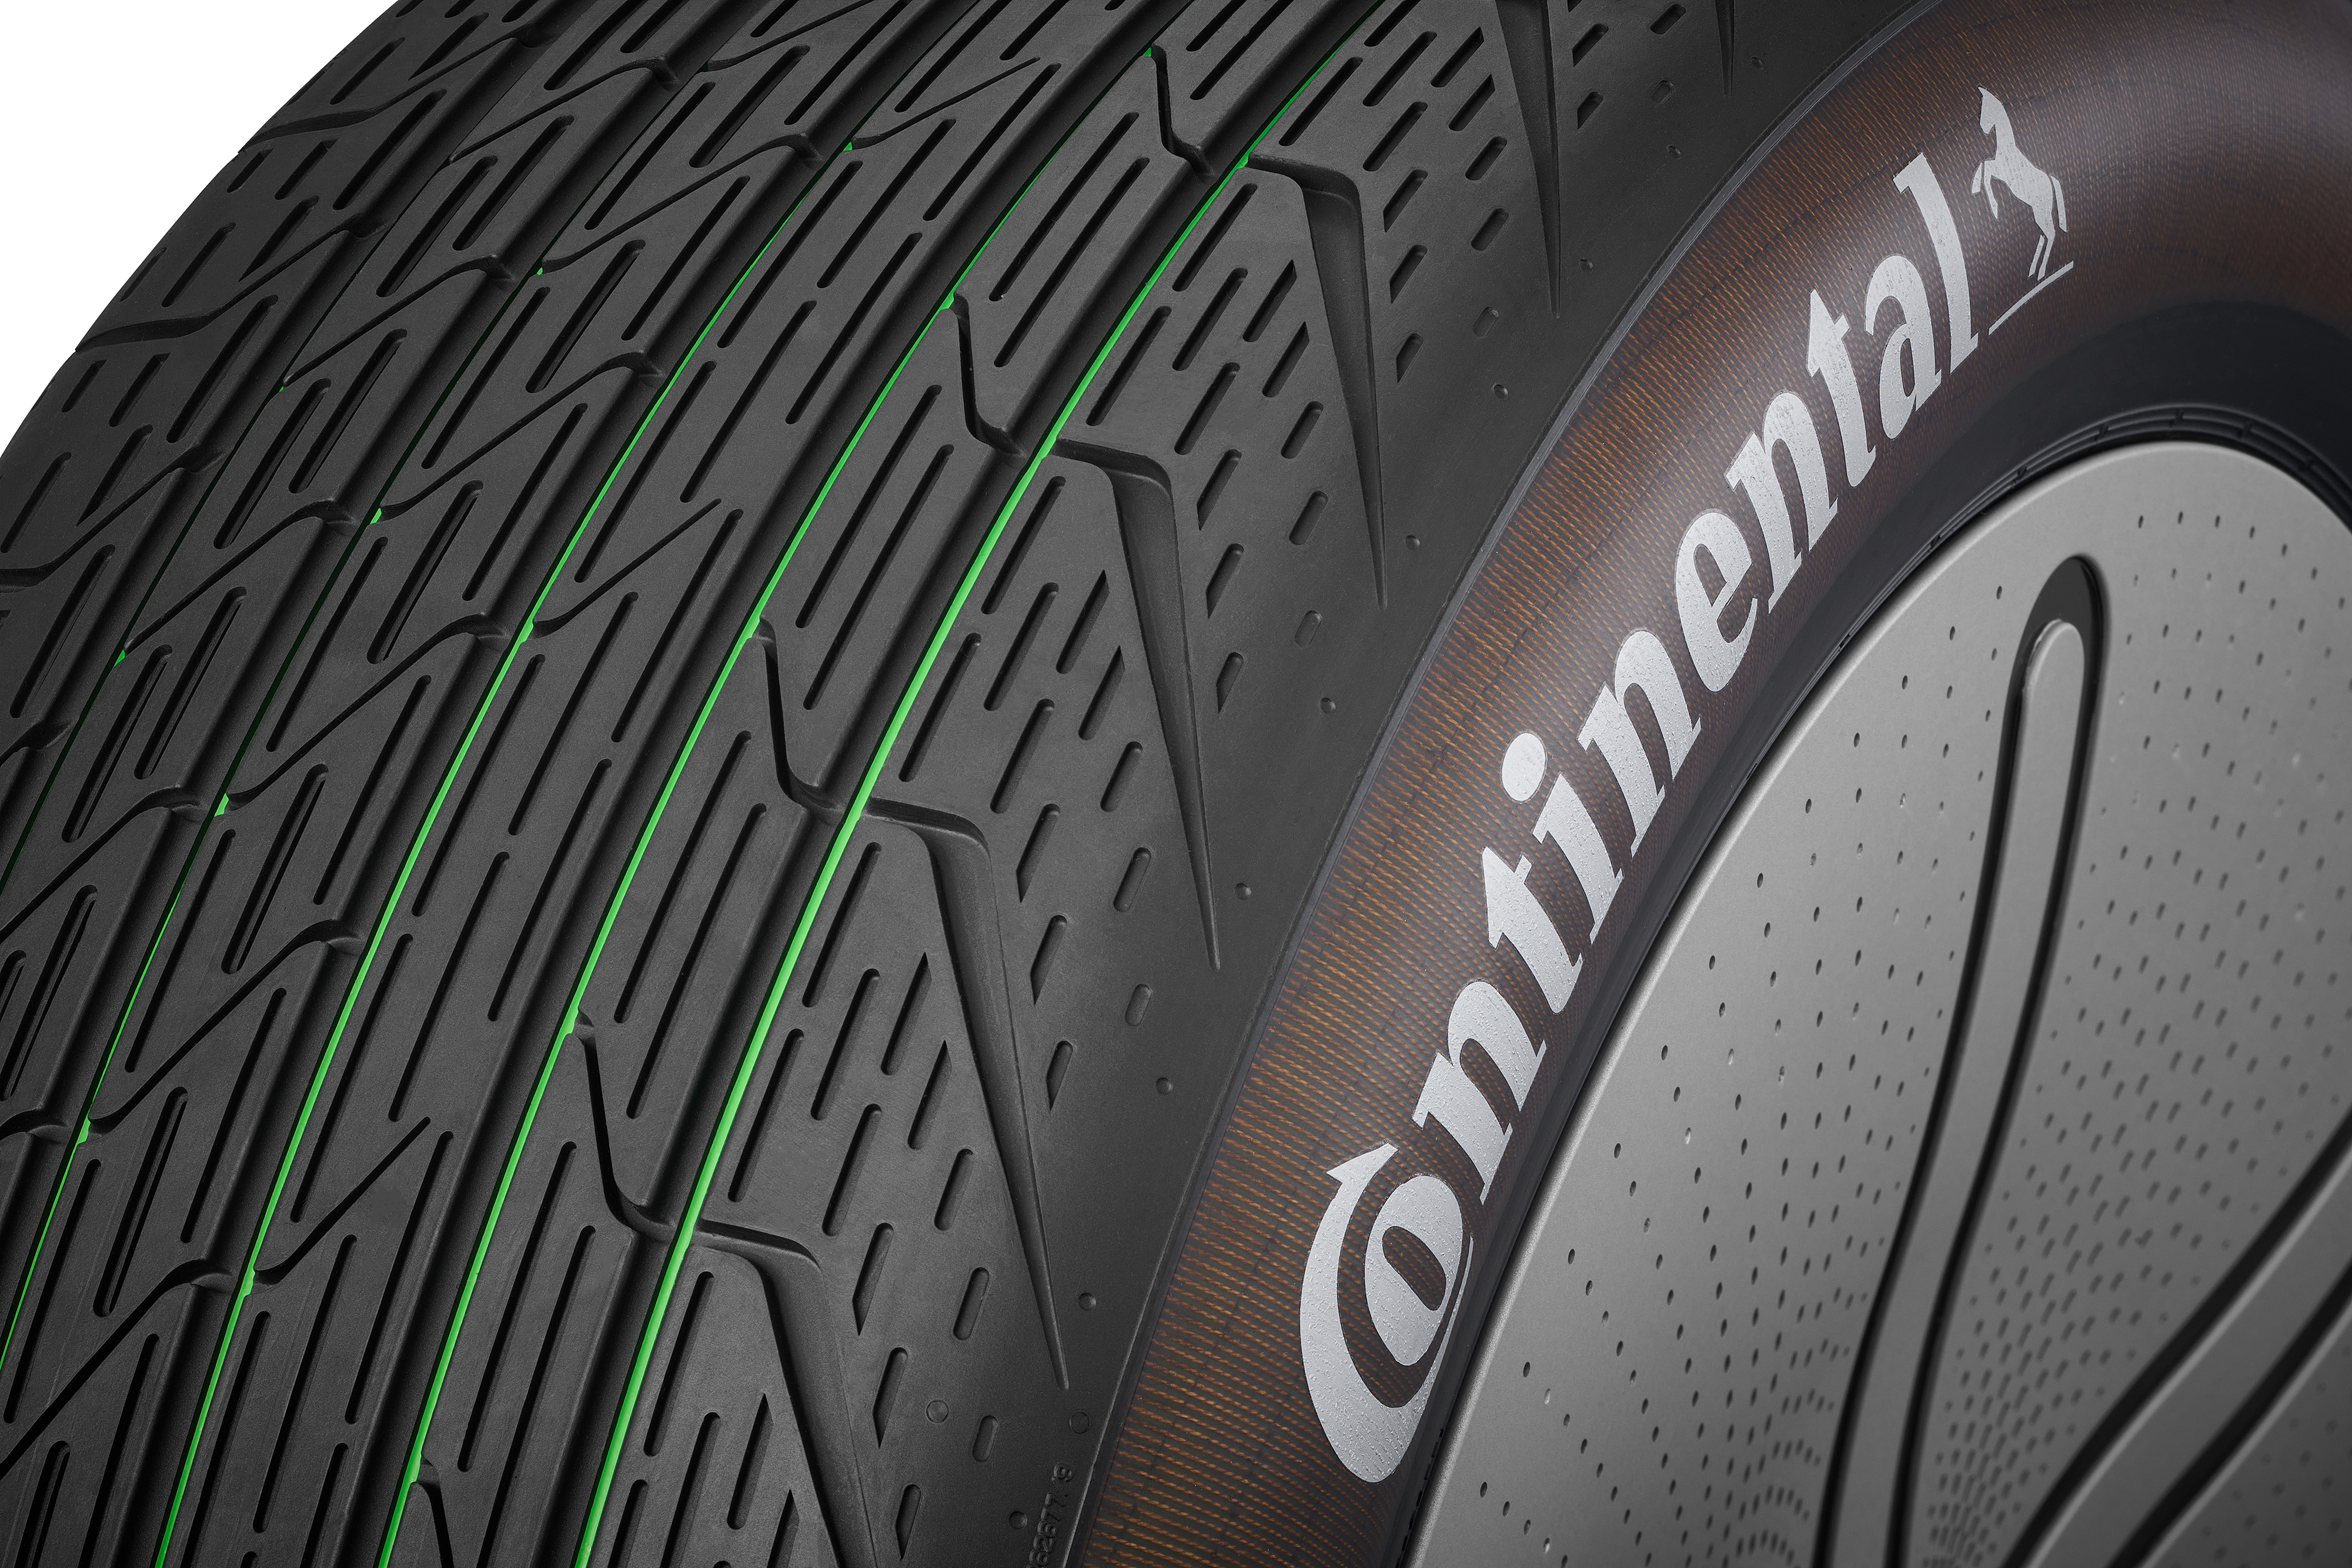 Continental - Continental AG, Continental Hisse Senedi Fiyatı ve Grafiği için tıklayın | Ger40.com 